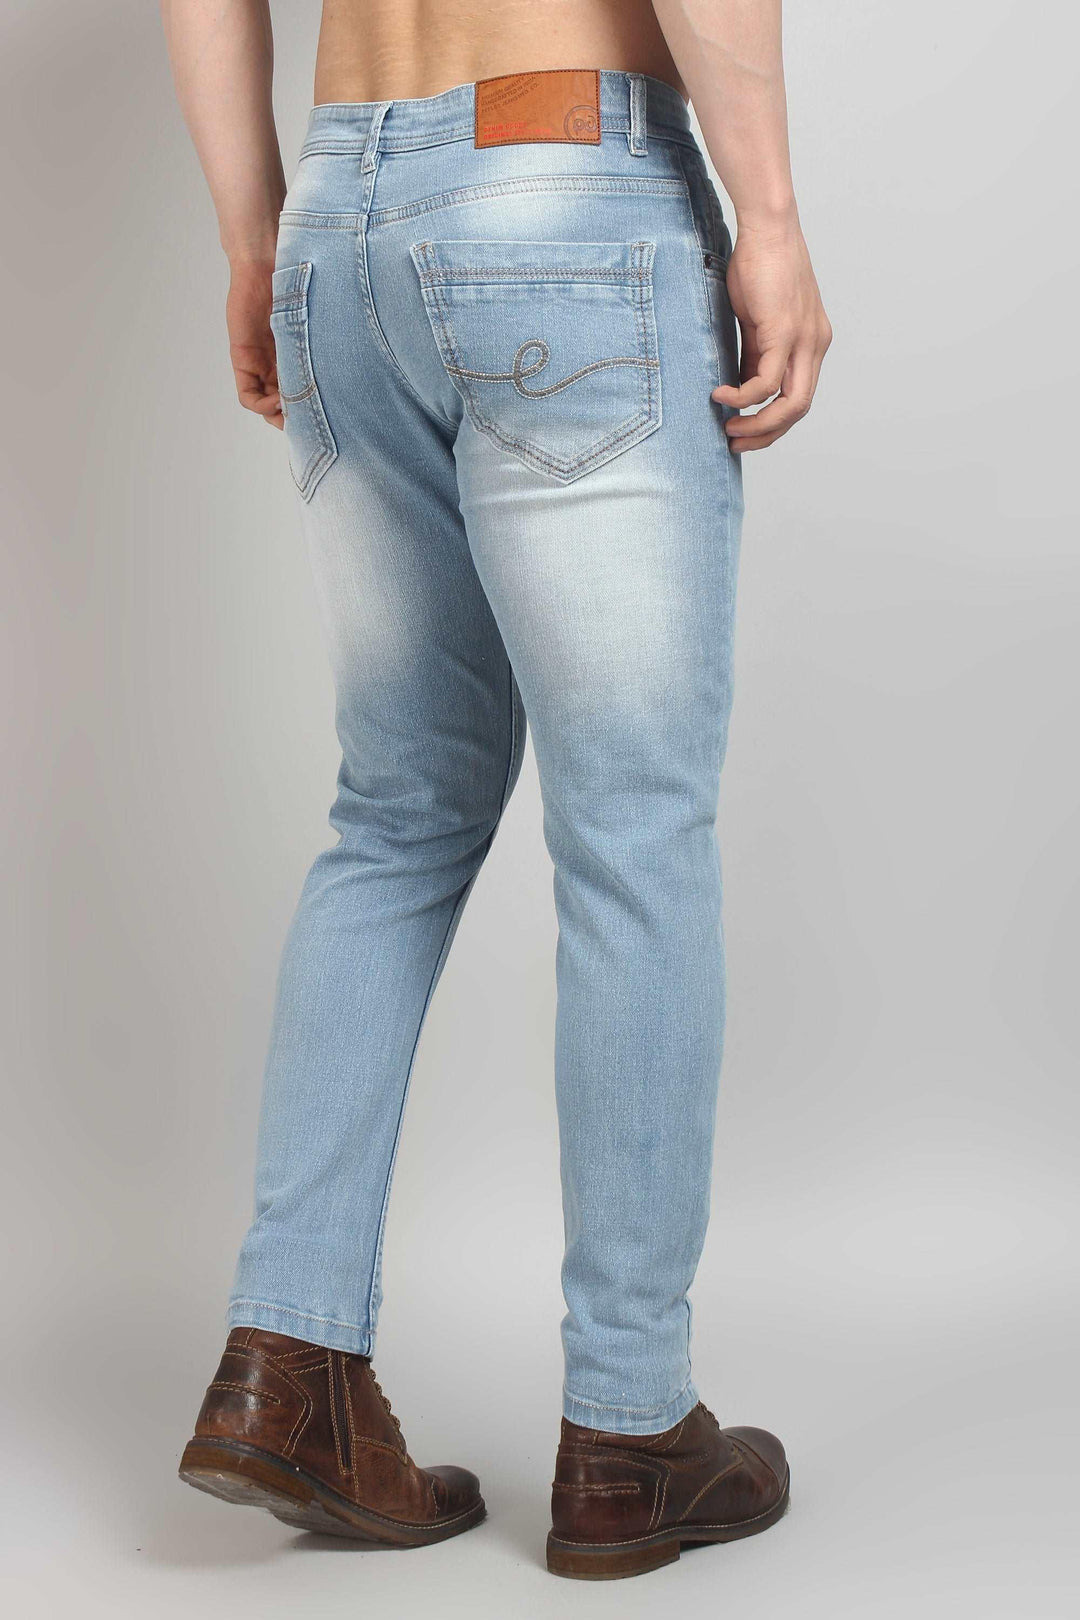 Ankle Fit Shine Blue Men's Denim Jeans - Peplos Jeans 